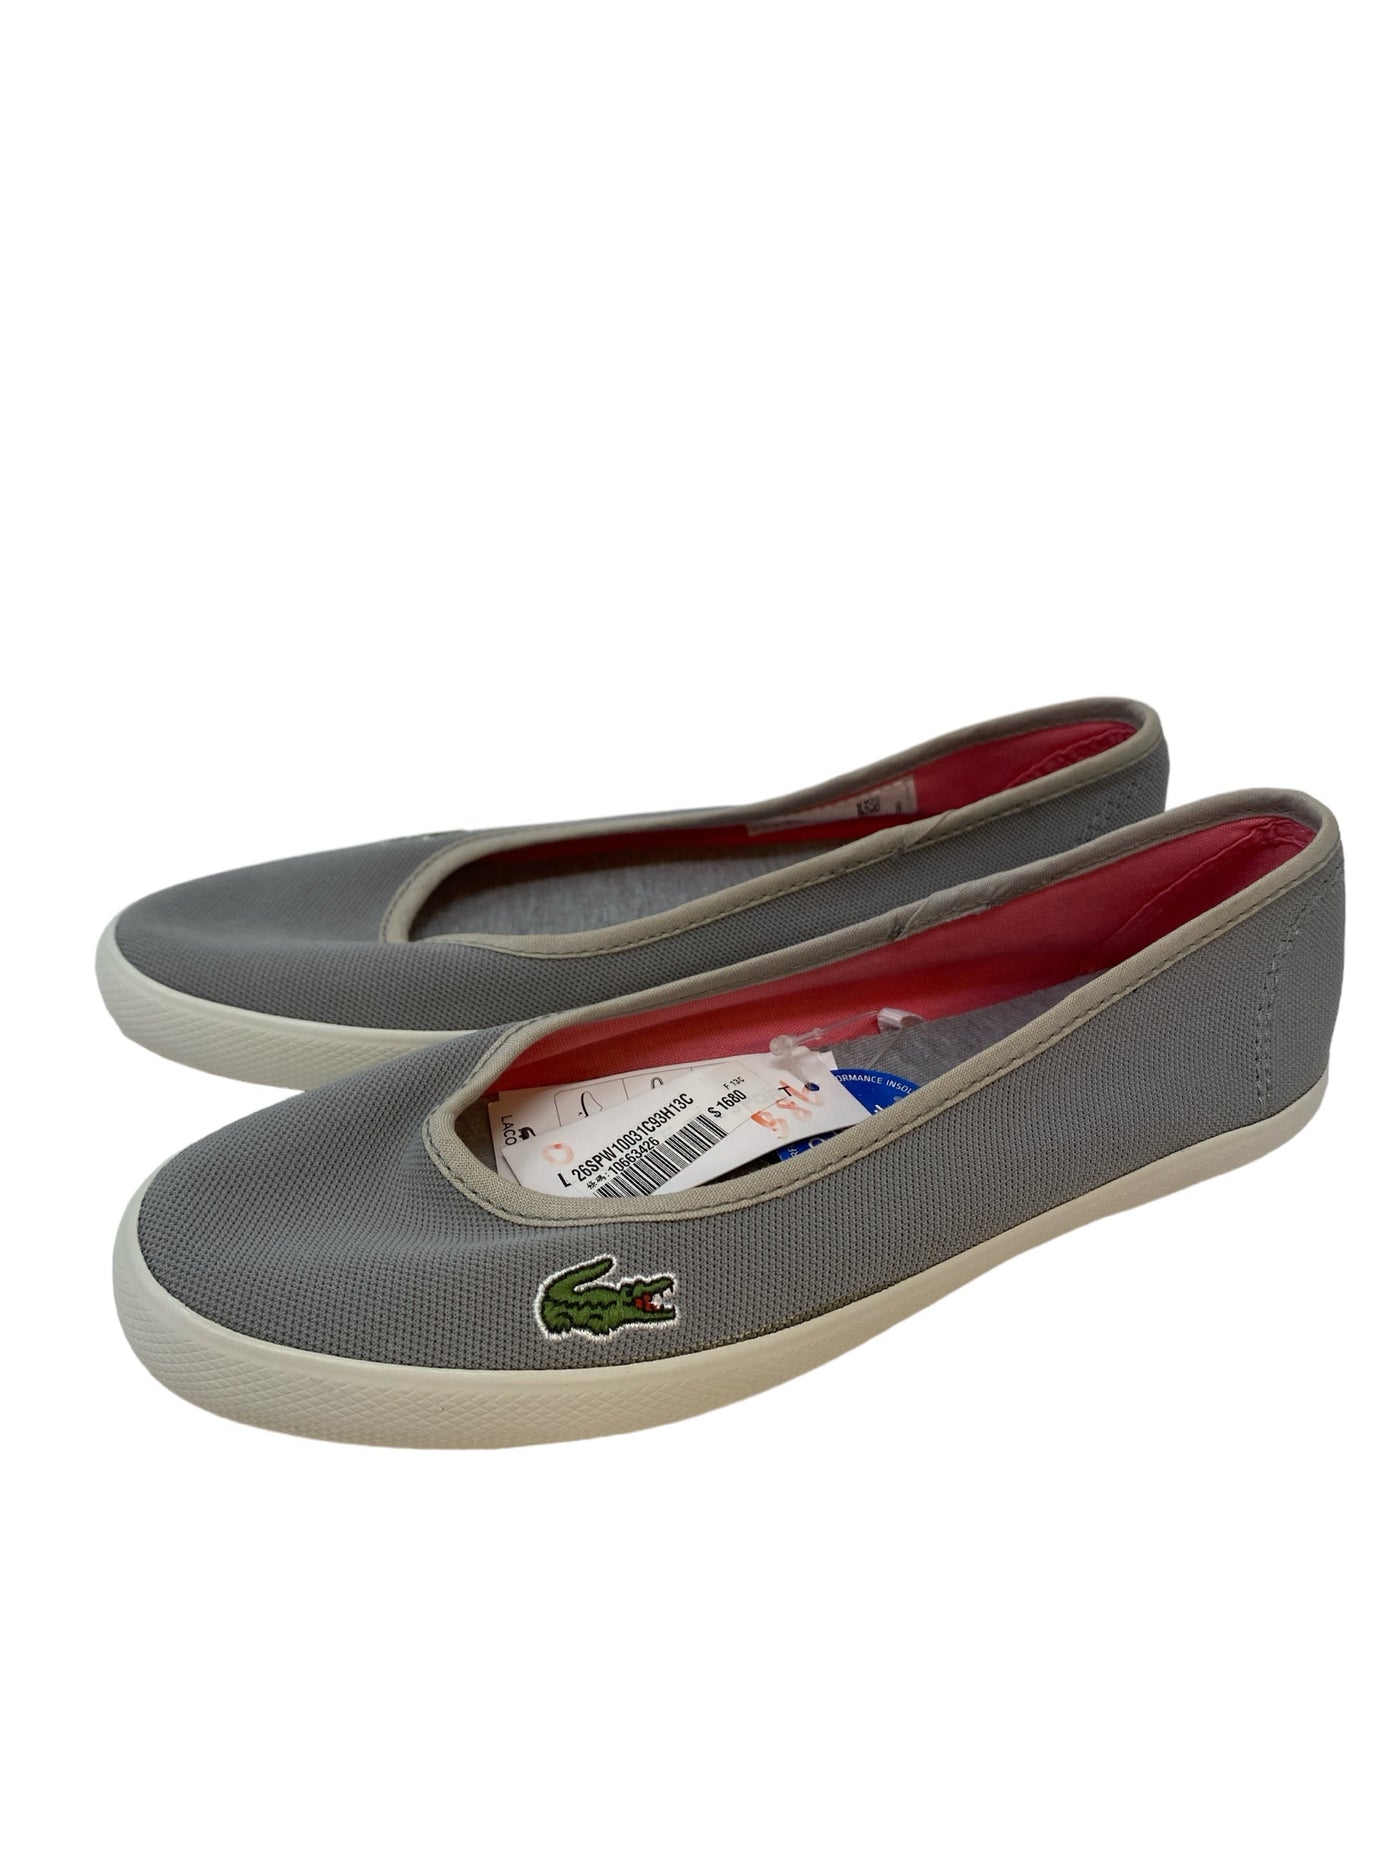 Lacoste Women Size 5.5 Grey Flats